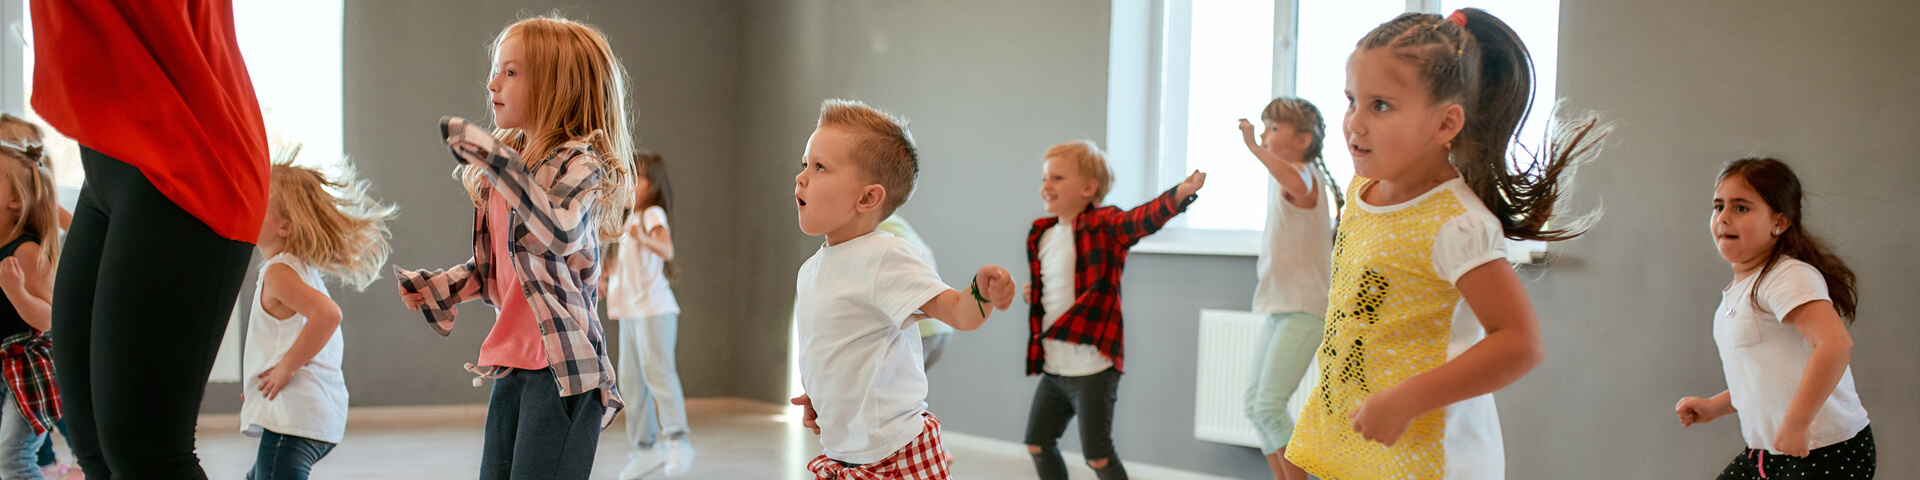 Children in a dance class, Following teacher’s dance moves.